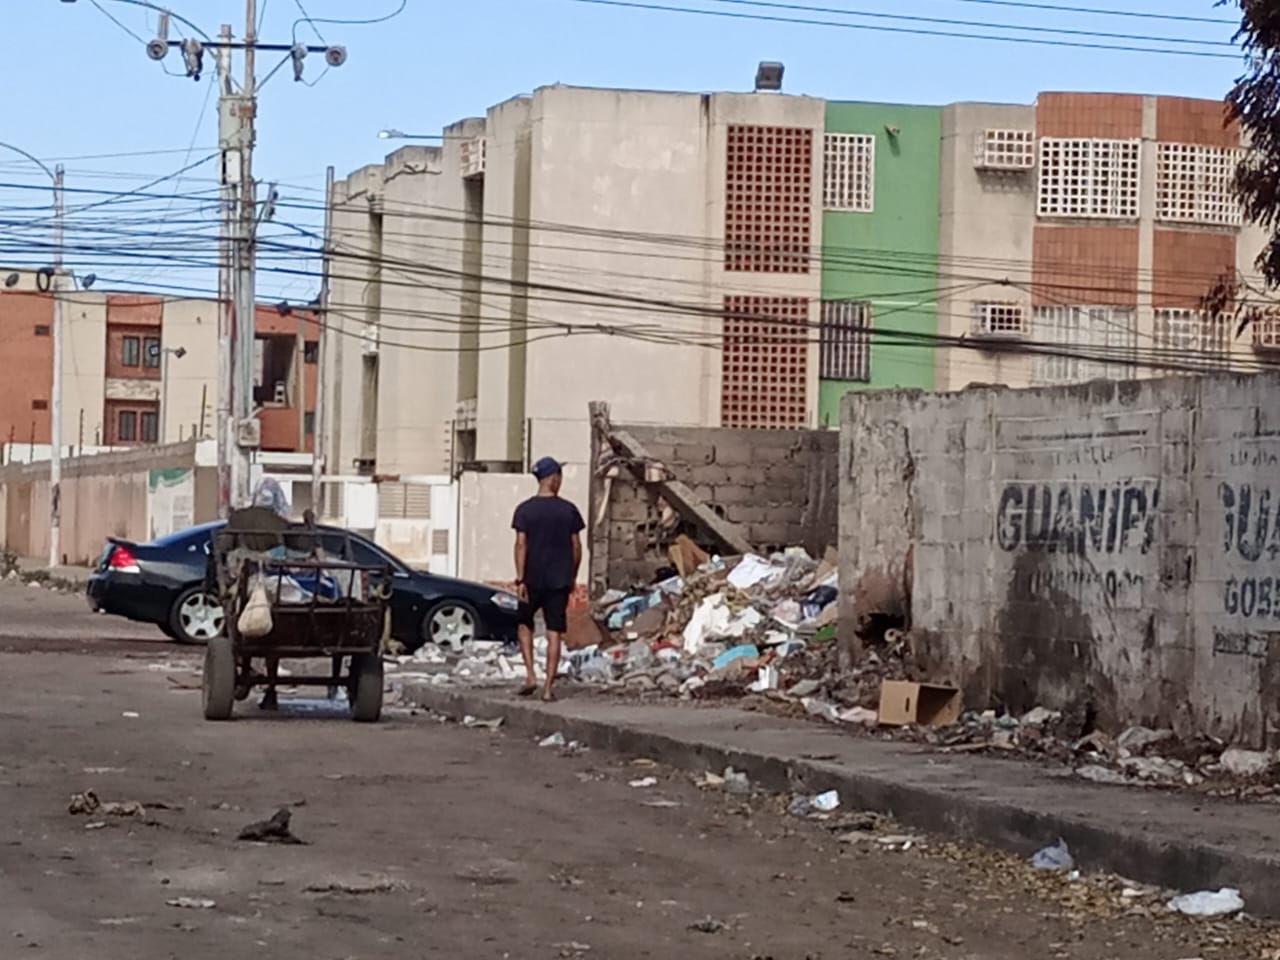 Vecinos de Amparo trabajarán junto al Imau para frenar la problemática de la basura (+ video)